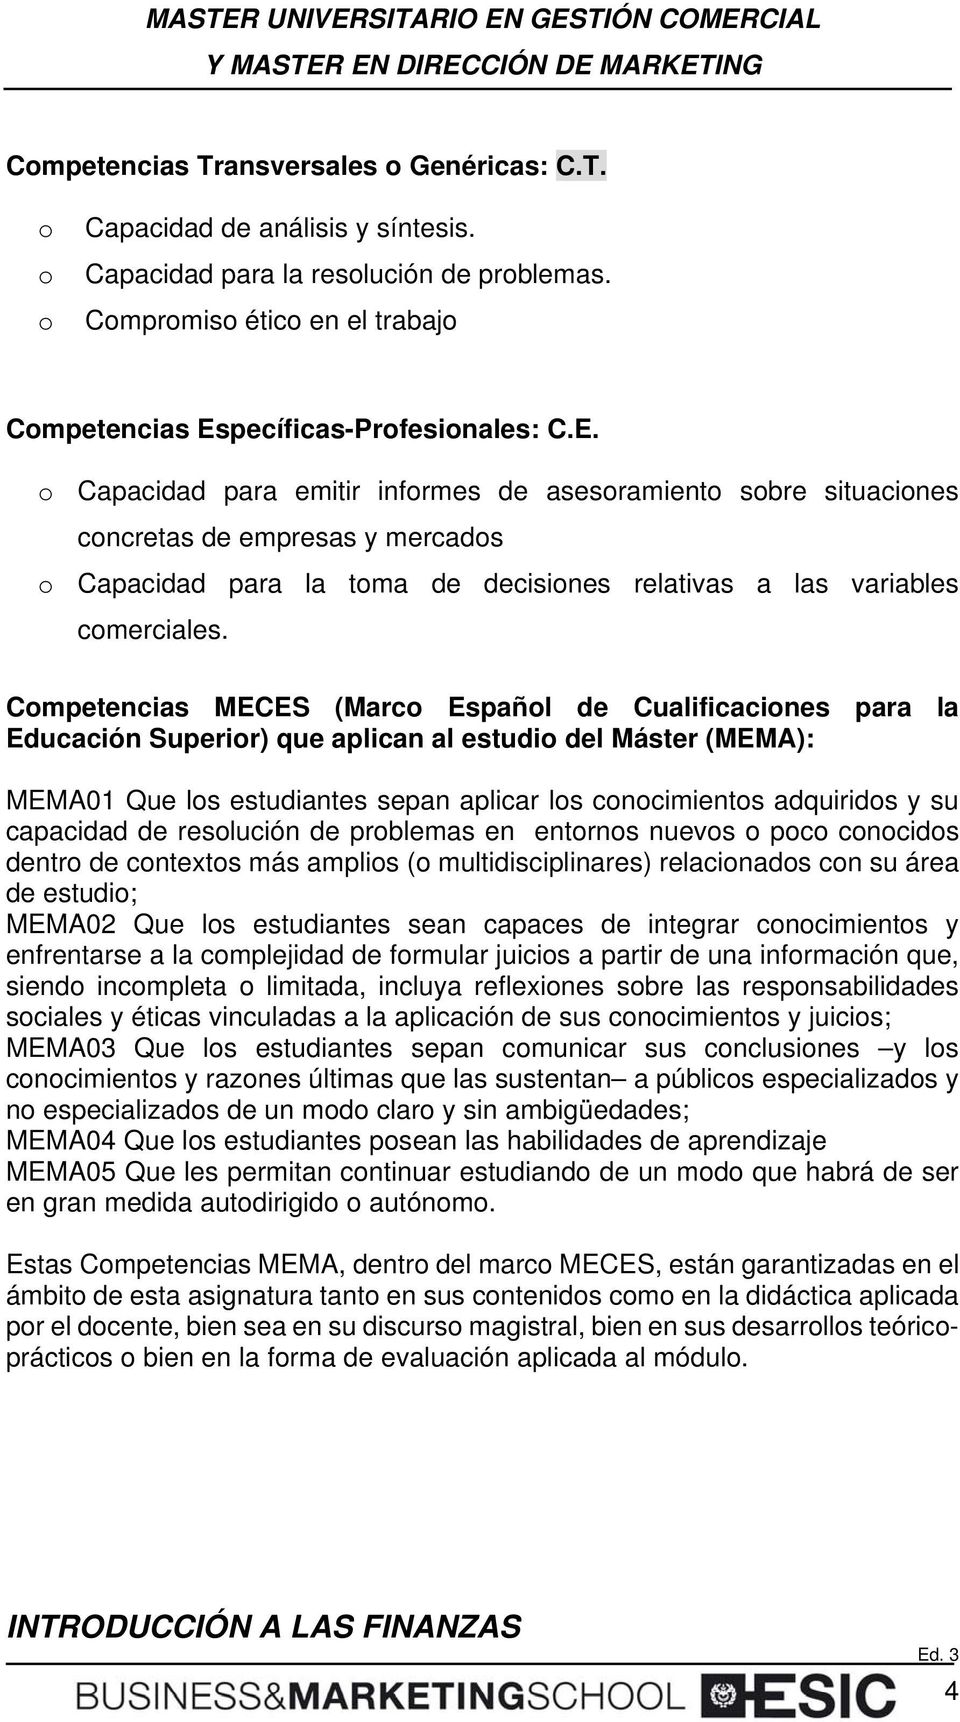 Cmpetencias MECES (Marc Españl de Cualificacines para la Educación Superir) que aplican al estudi del Máster (MEMA): MEMA01 Que ls estudiantes sepan aplicar ls cncimients adquirids y su capacidad de